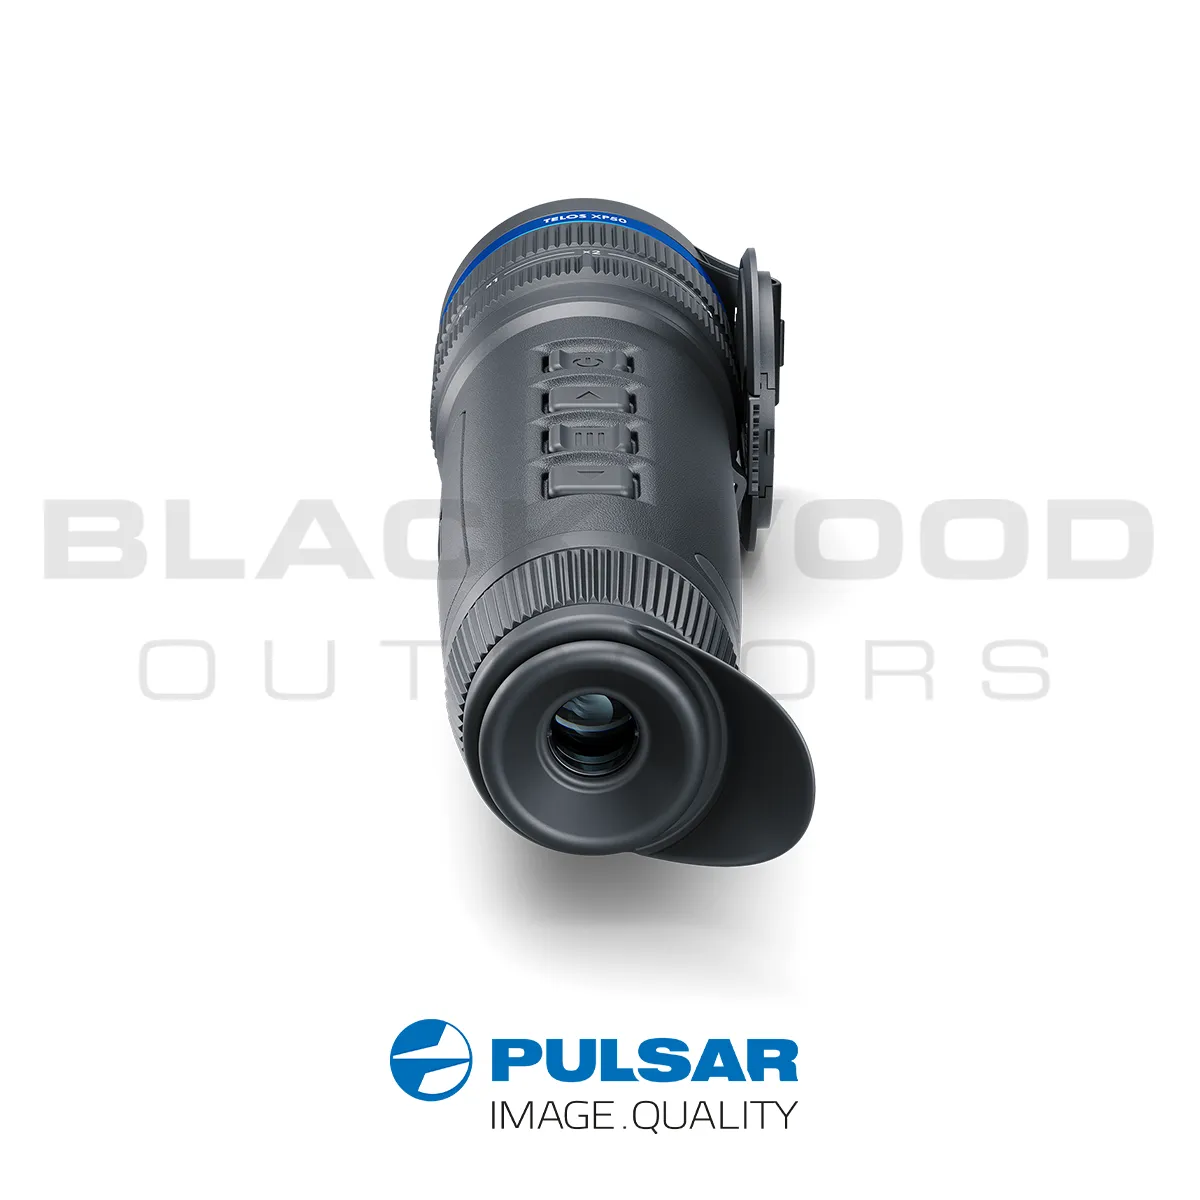 Pulsar Telos XP50 Thermal Rear View